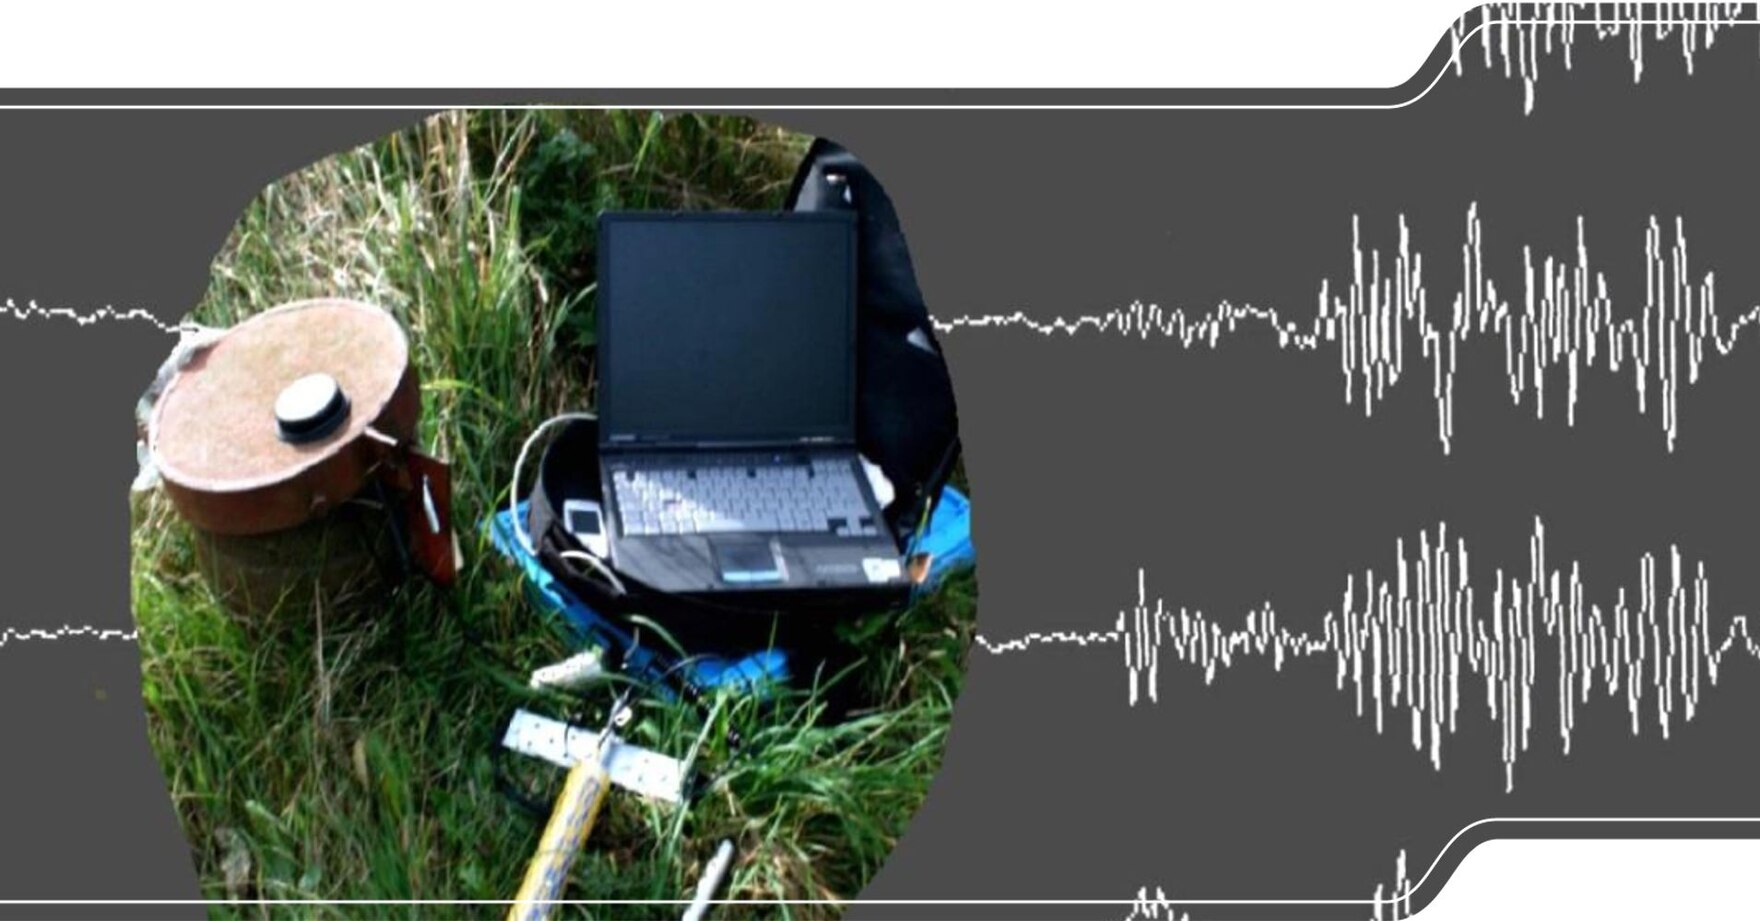 Das Bild zeigt Ausrüstungsgegenstände für eine seismische Untersuchung.